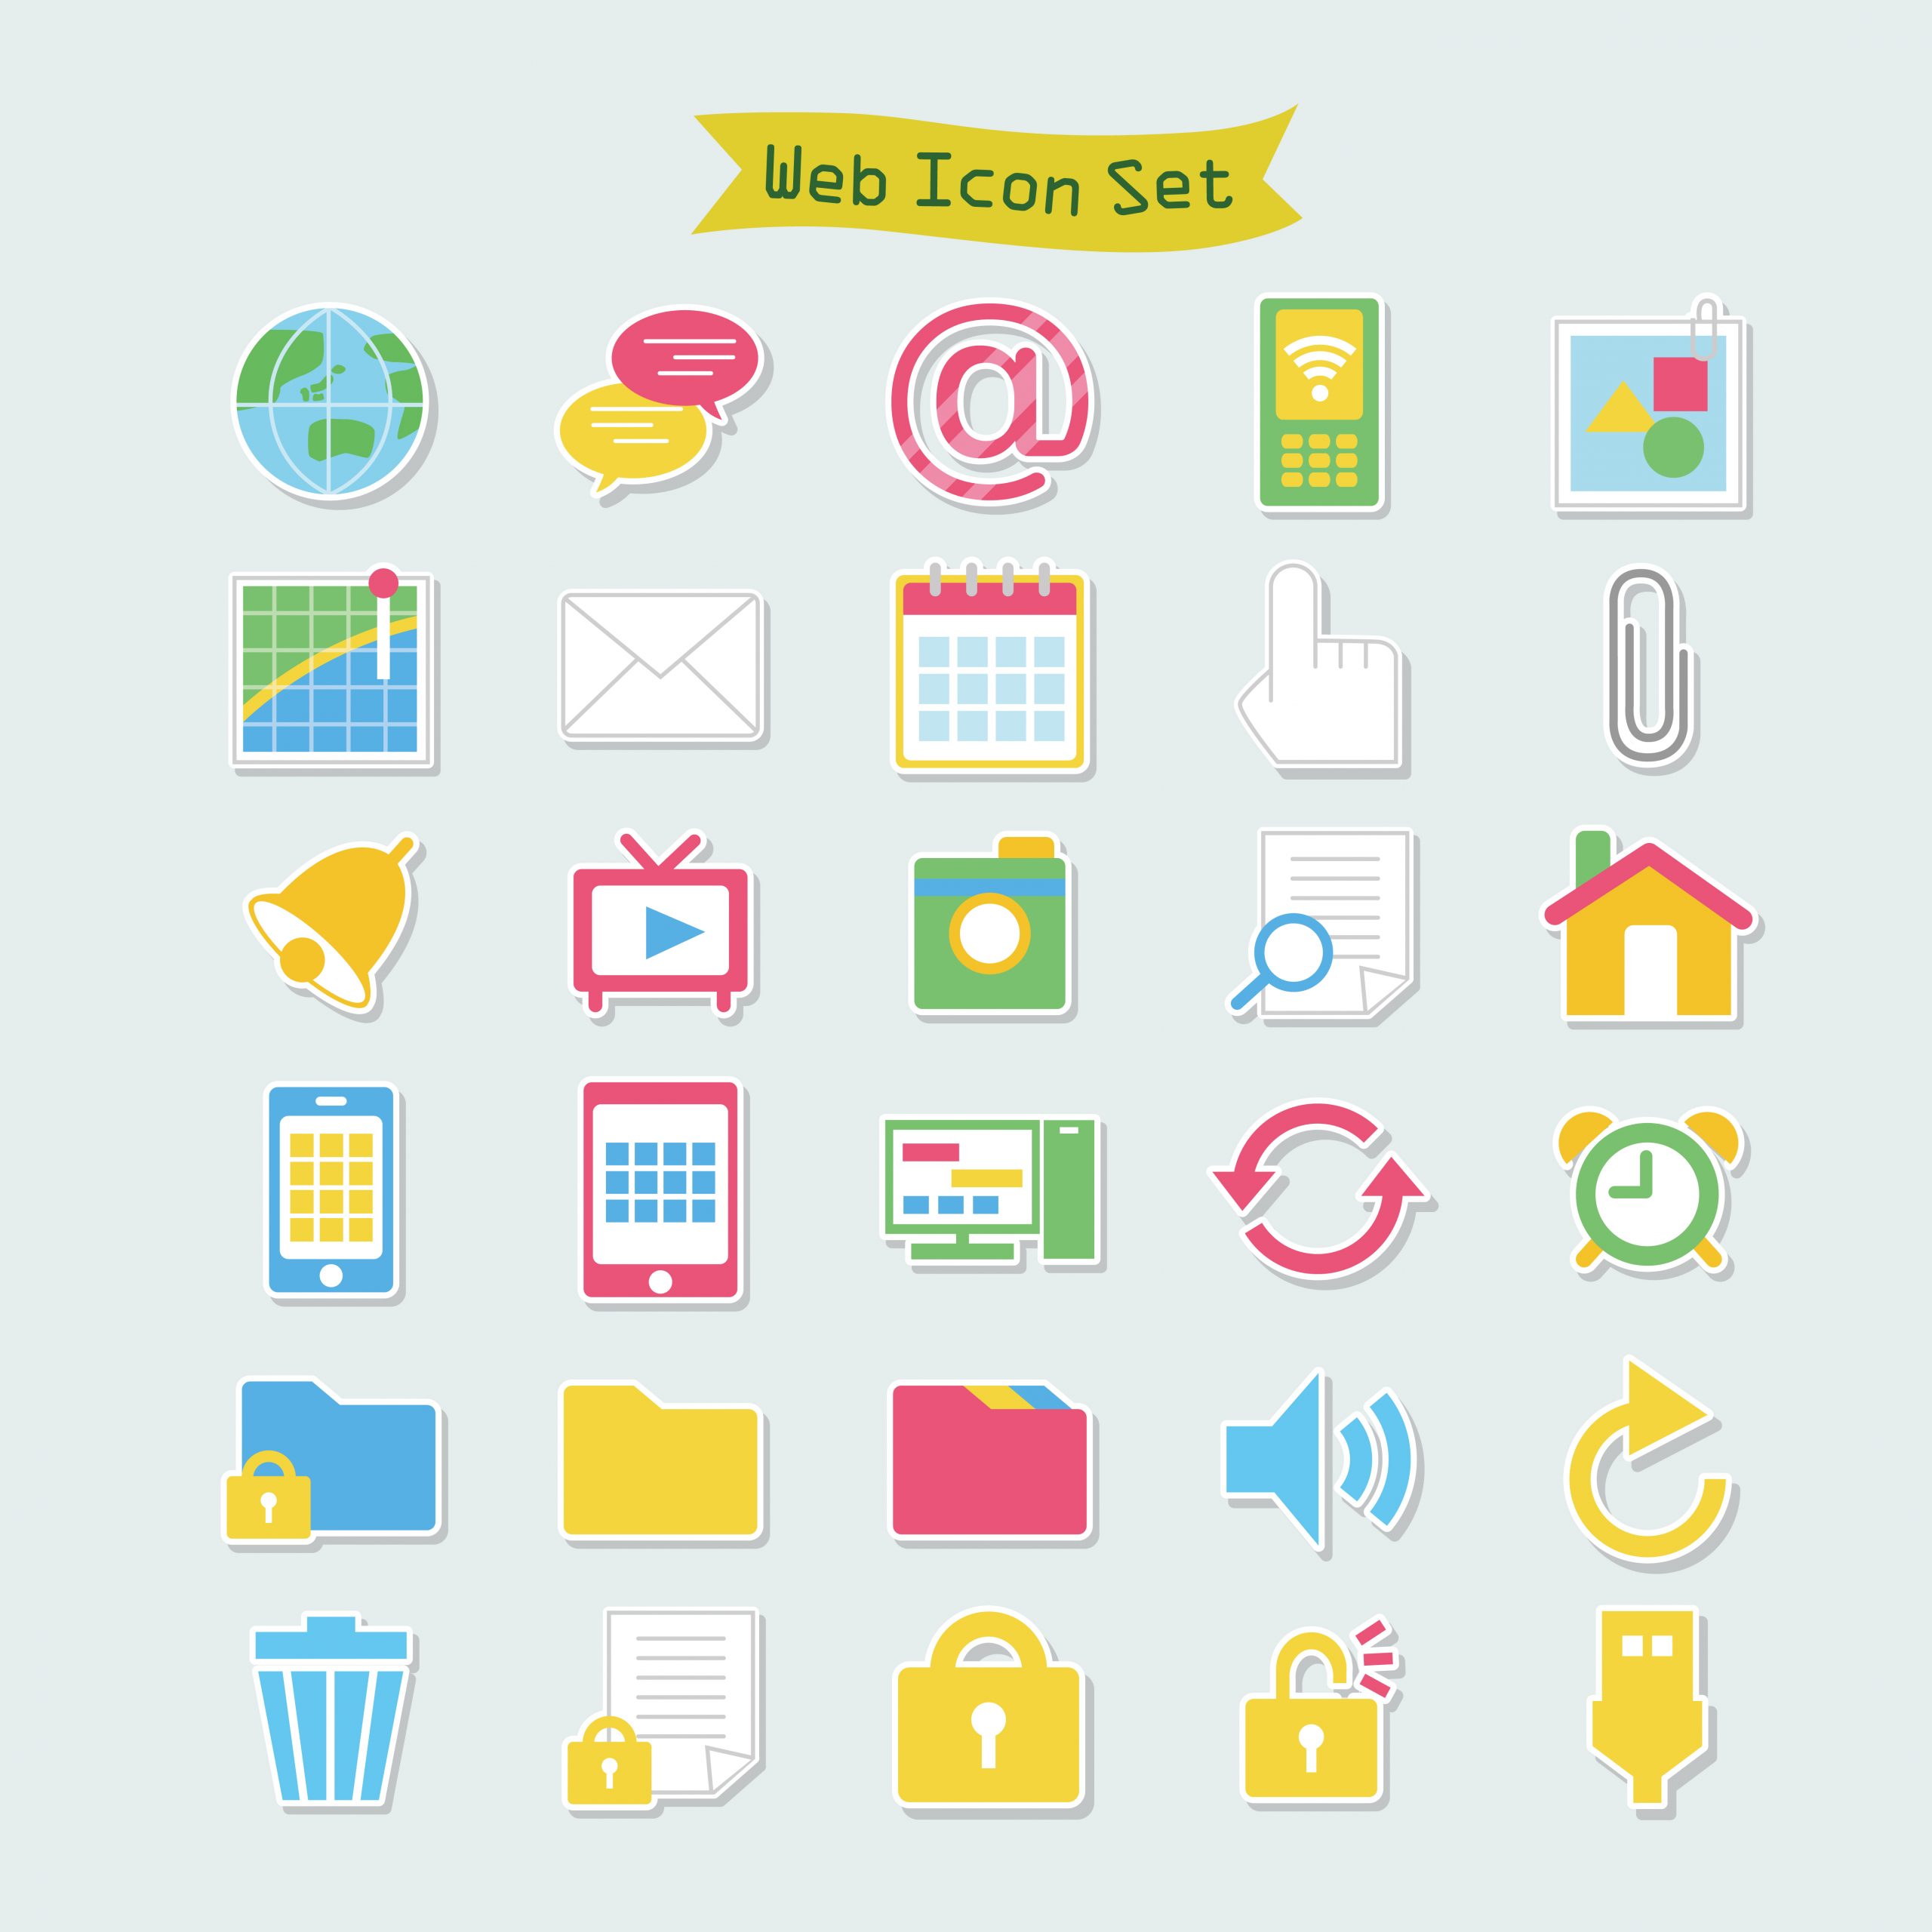 10 Ways to Use Icon Vectors in Digital Design